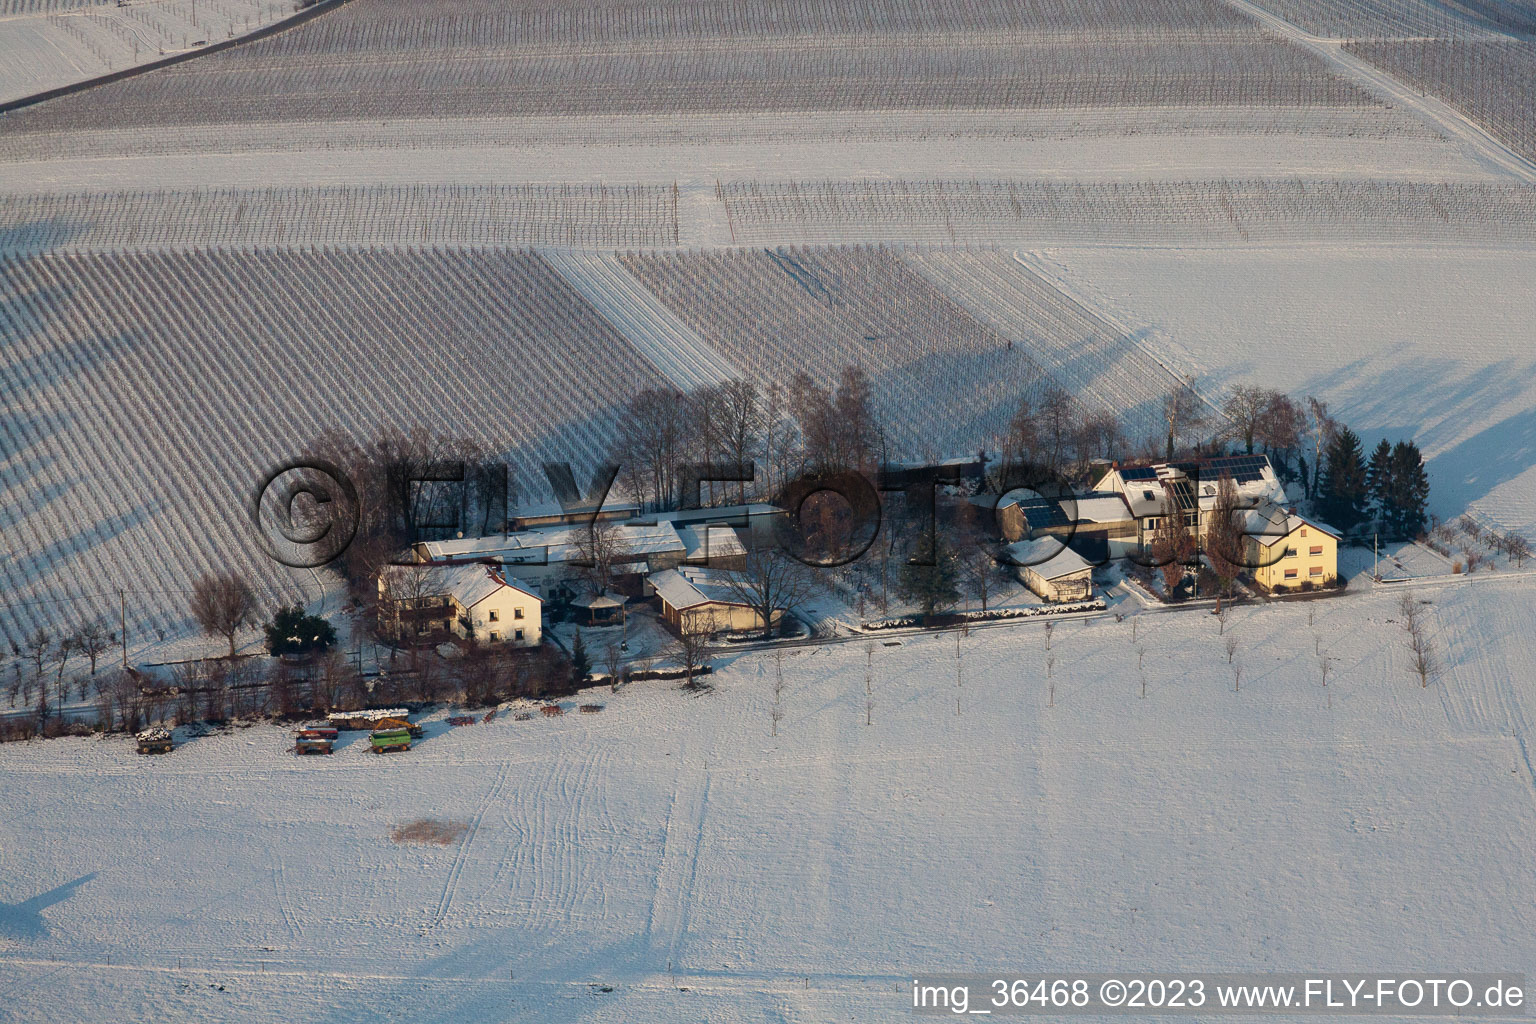 Image drone de Deutschhof dans le département Rhénanie-Palatinat, Allemagne